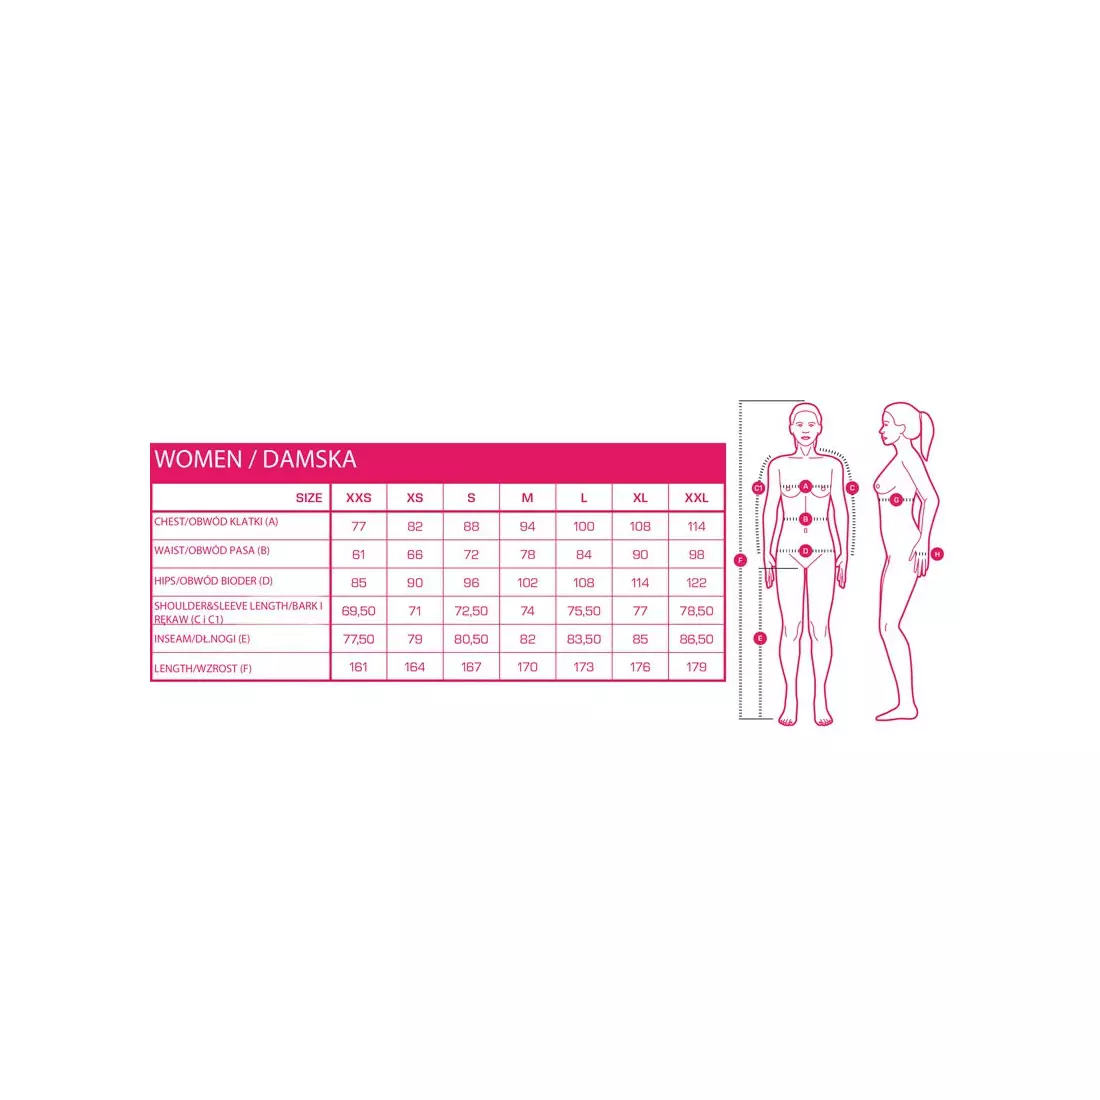 CRAFT EAZE könnyű futókabát, női, rózsaszín 1906401-720000